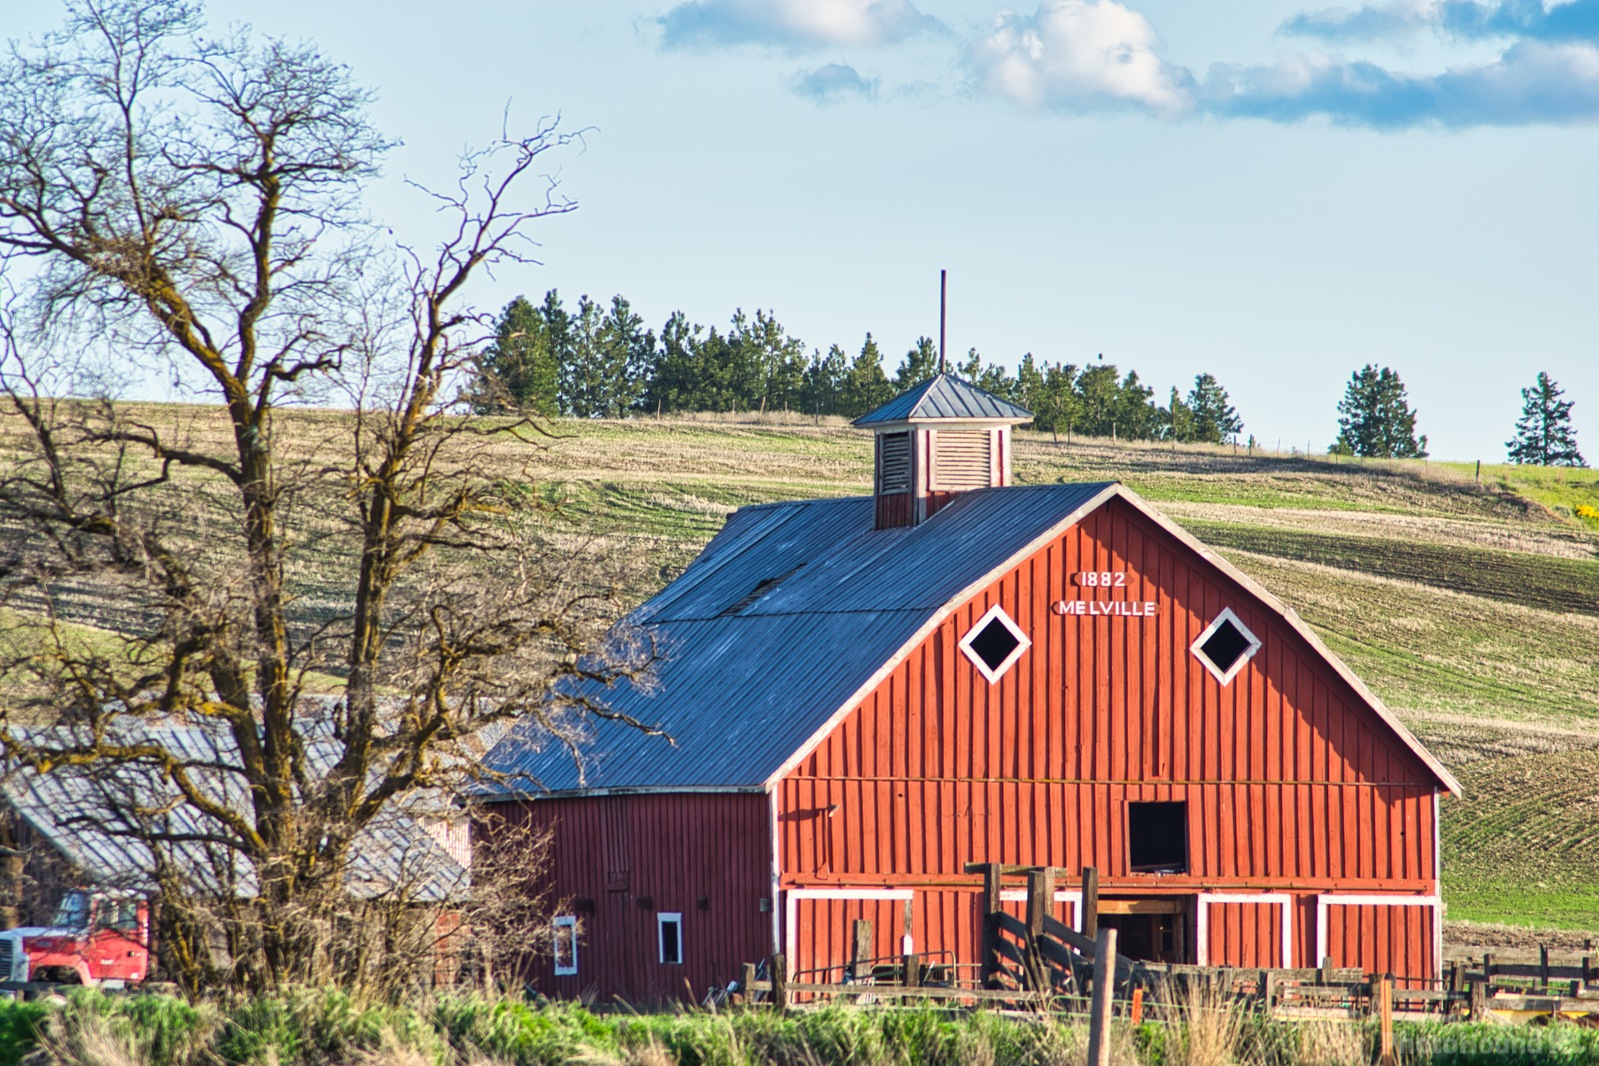 Image of Melville Barn Lamont, Washington by Steve West